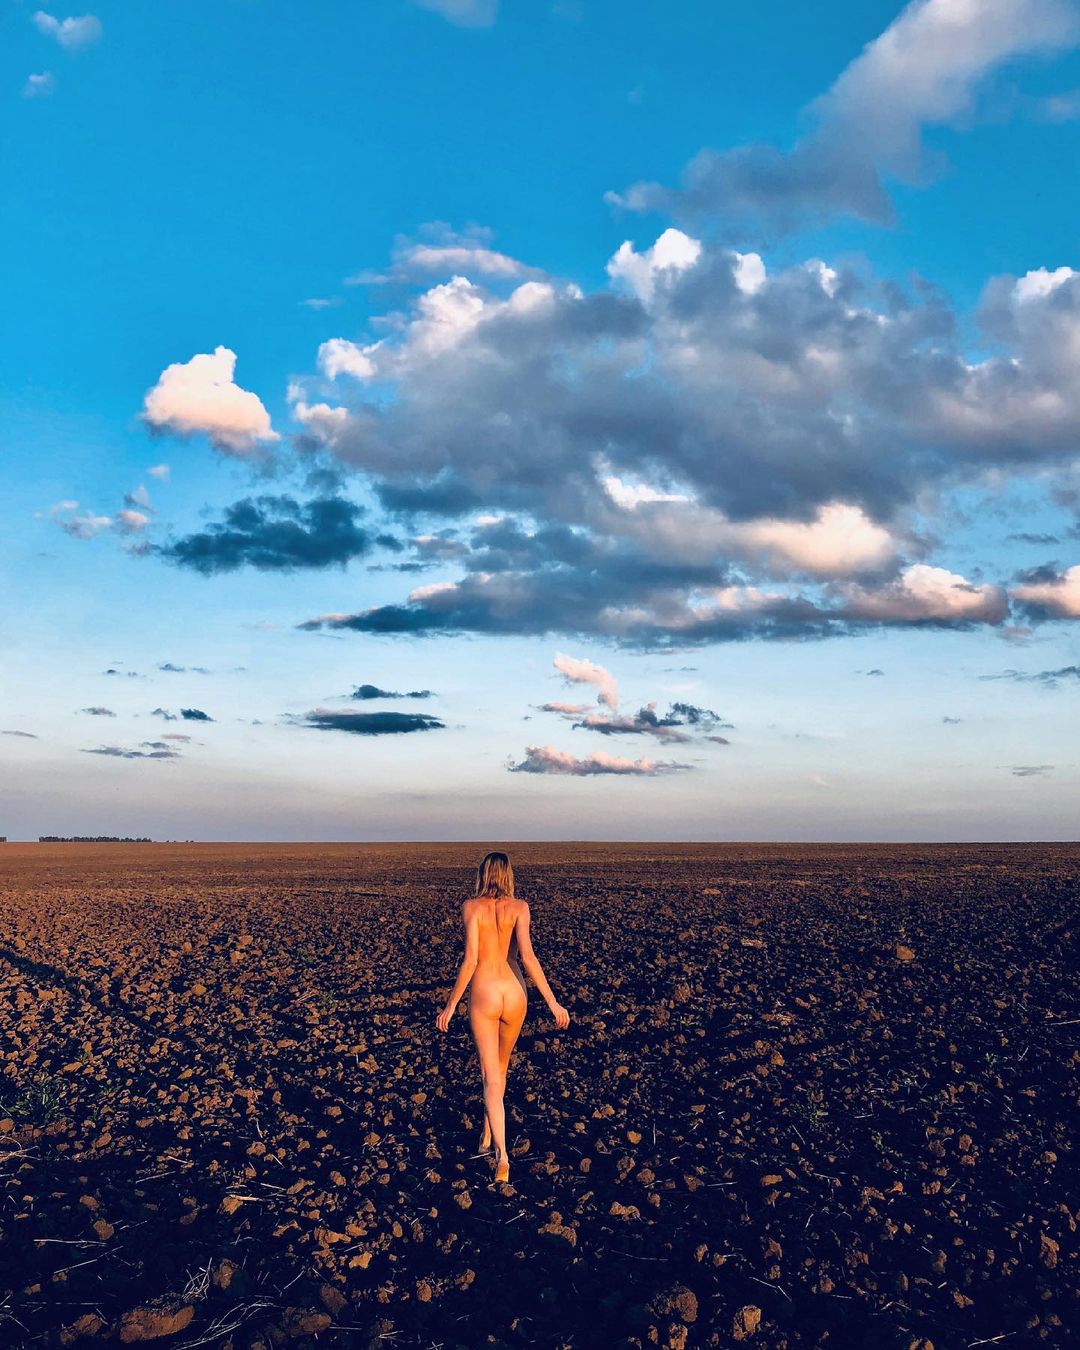 Максим Виторган прокомментировал фото полностью голой Любови Толкалиной в перекопаном поле